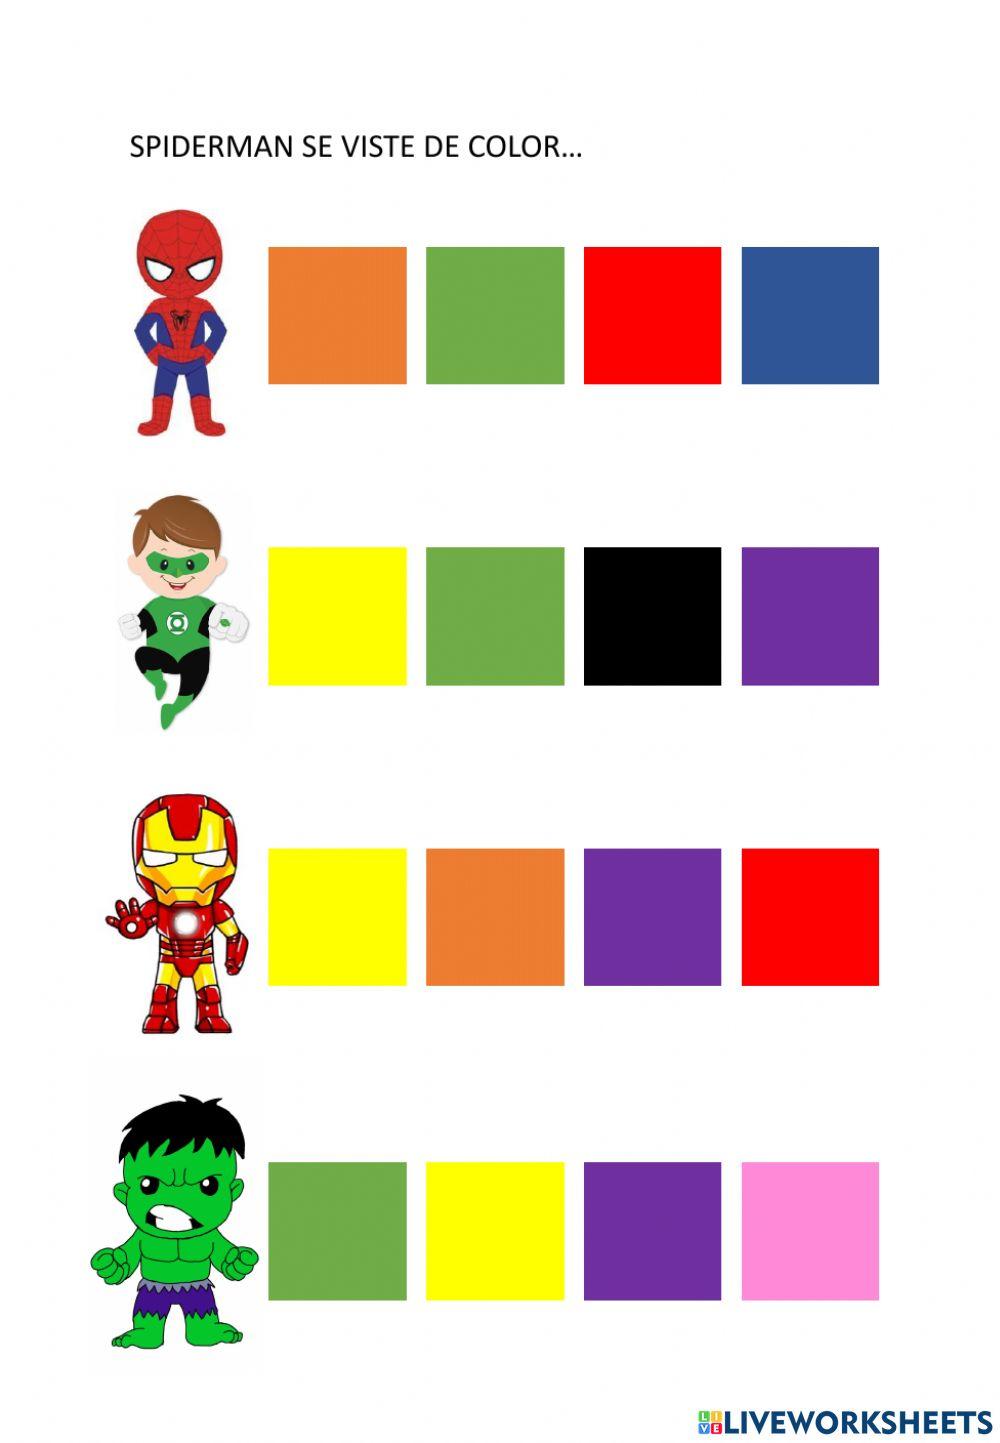 Los superhéroes se visten de color...